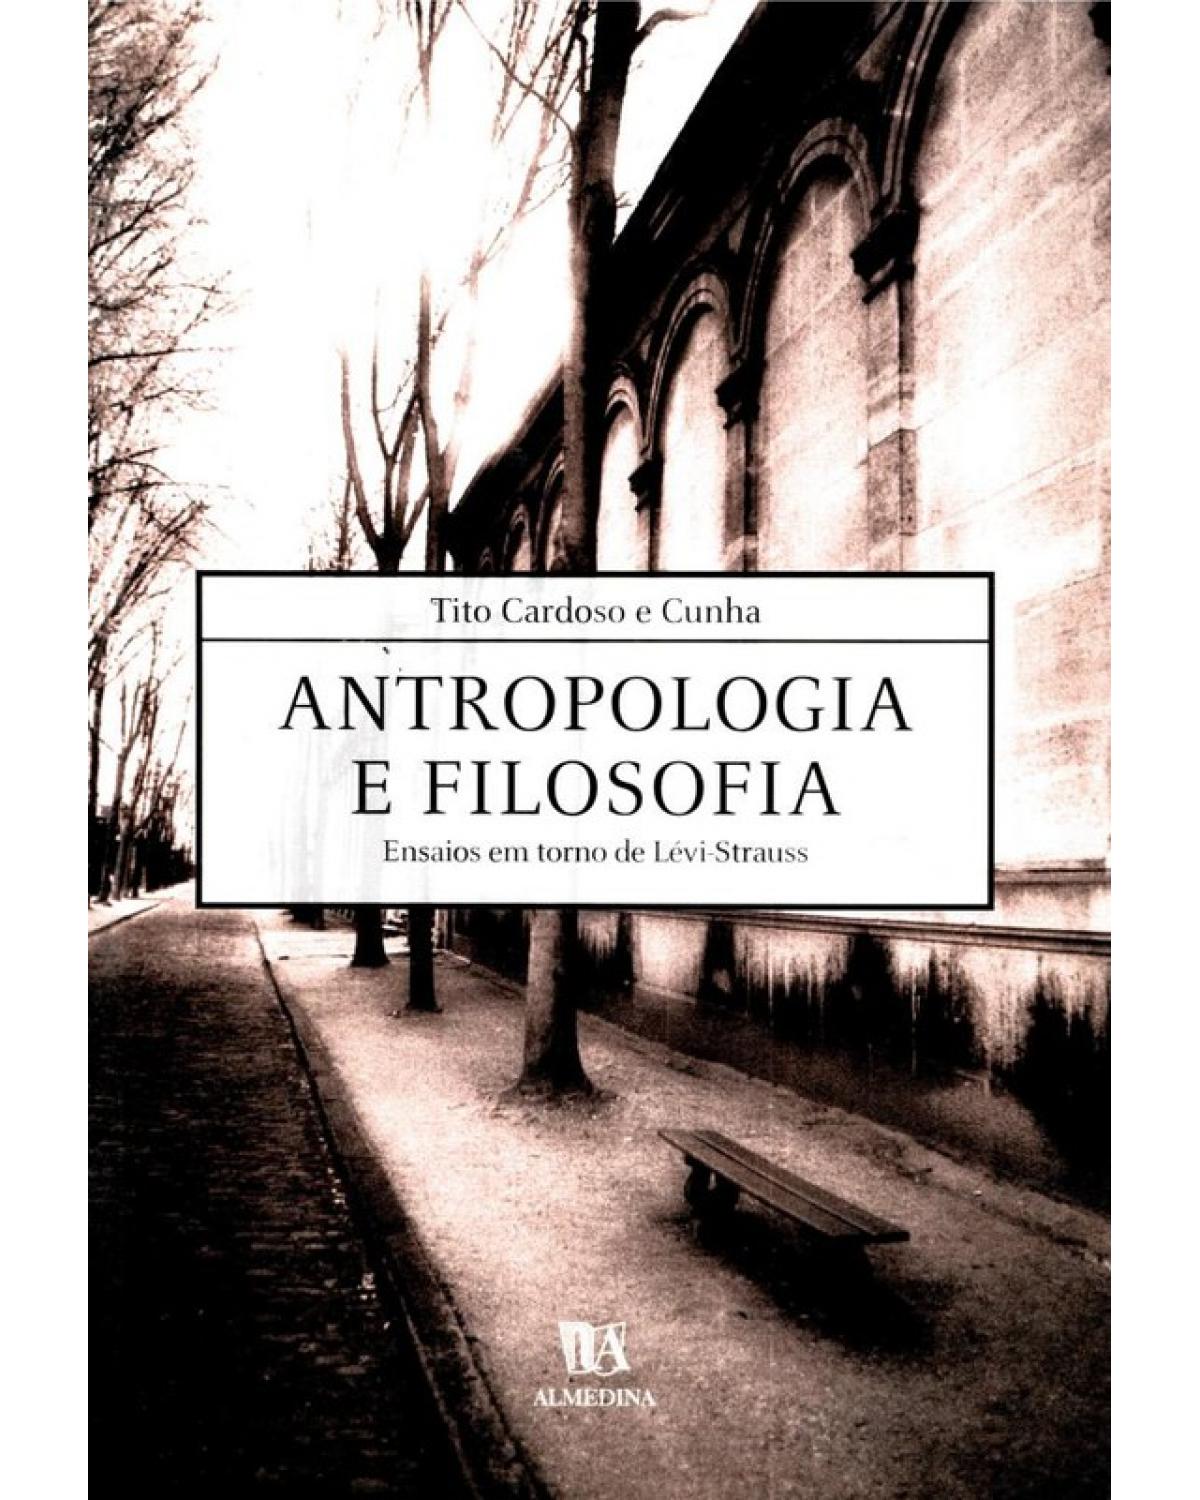 Antropologia e filosofia - ensaios em torno de Lévi-Strauss - 1ª Edição | 2002